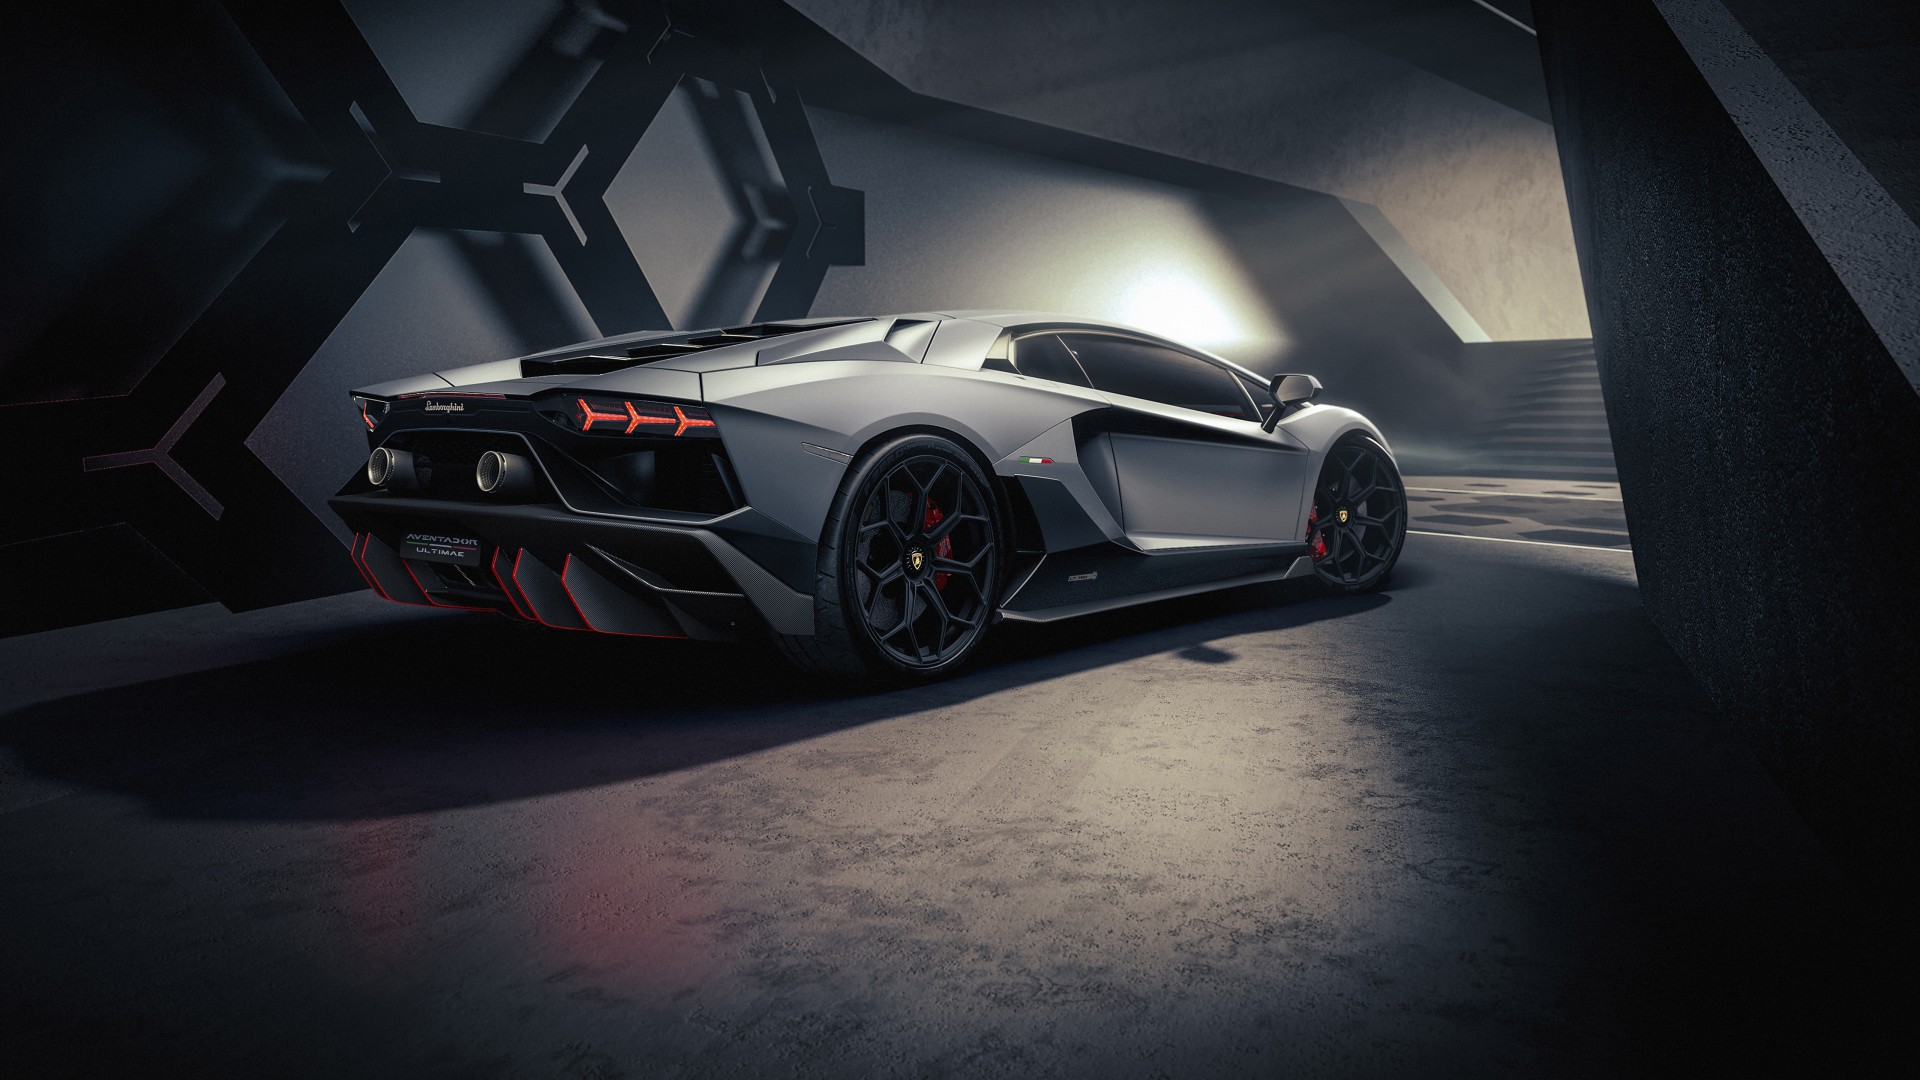 Lamborghini Aventador LP 780-4 Ultimae 2021 5K 5 Wallpaper - bộ hình nền đỉnh cao của Lamborghini sẽ khiến bạn phát cuồng vì độ đẹp và sự hoàn hảo. Với thiết kế cực kì tinh tế và sang trọng, chiếc siêu xe này đích thực là một tuyệt tác của công nghệ và kỹ thuật. Hãy thưởng thức và tận hưởng một cảm giác mới lạ với bộ hình ảnh này.